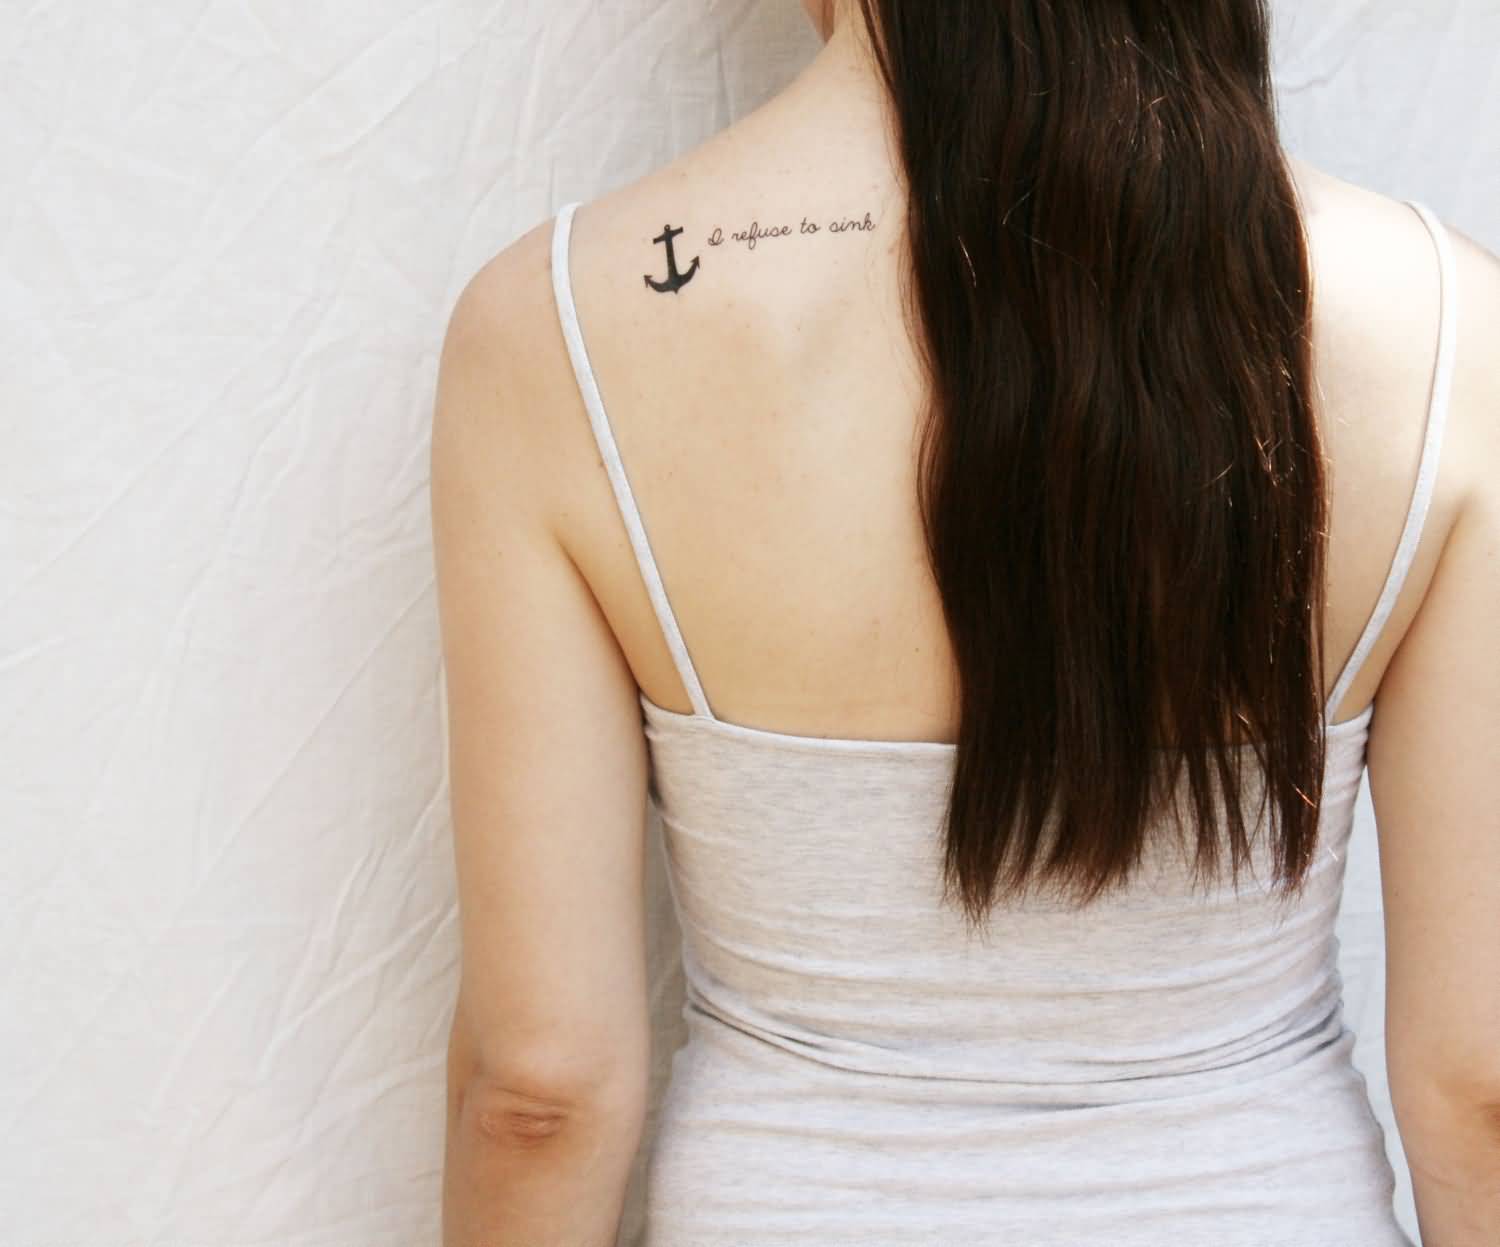 I Refuse To Sink - Black Anchor Tattoo On Women Left Back Shoulder